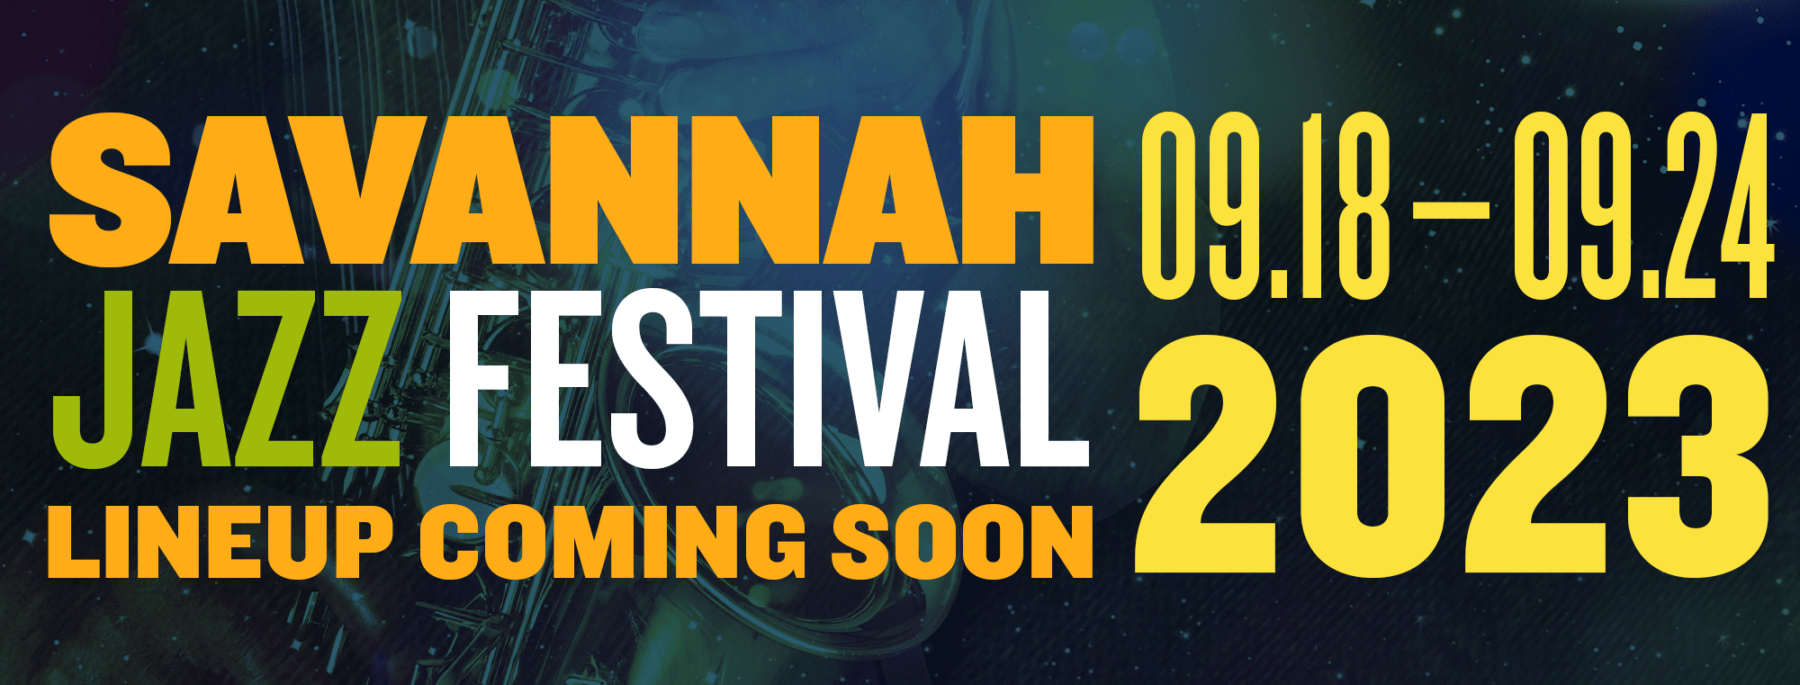 2023 Festival Dates Savannah Jazz